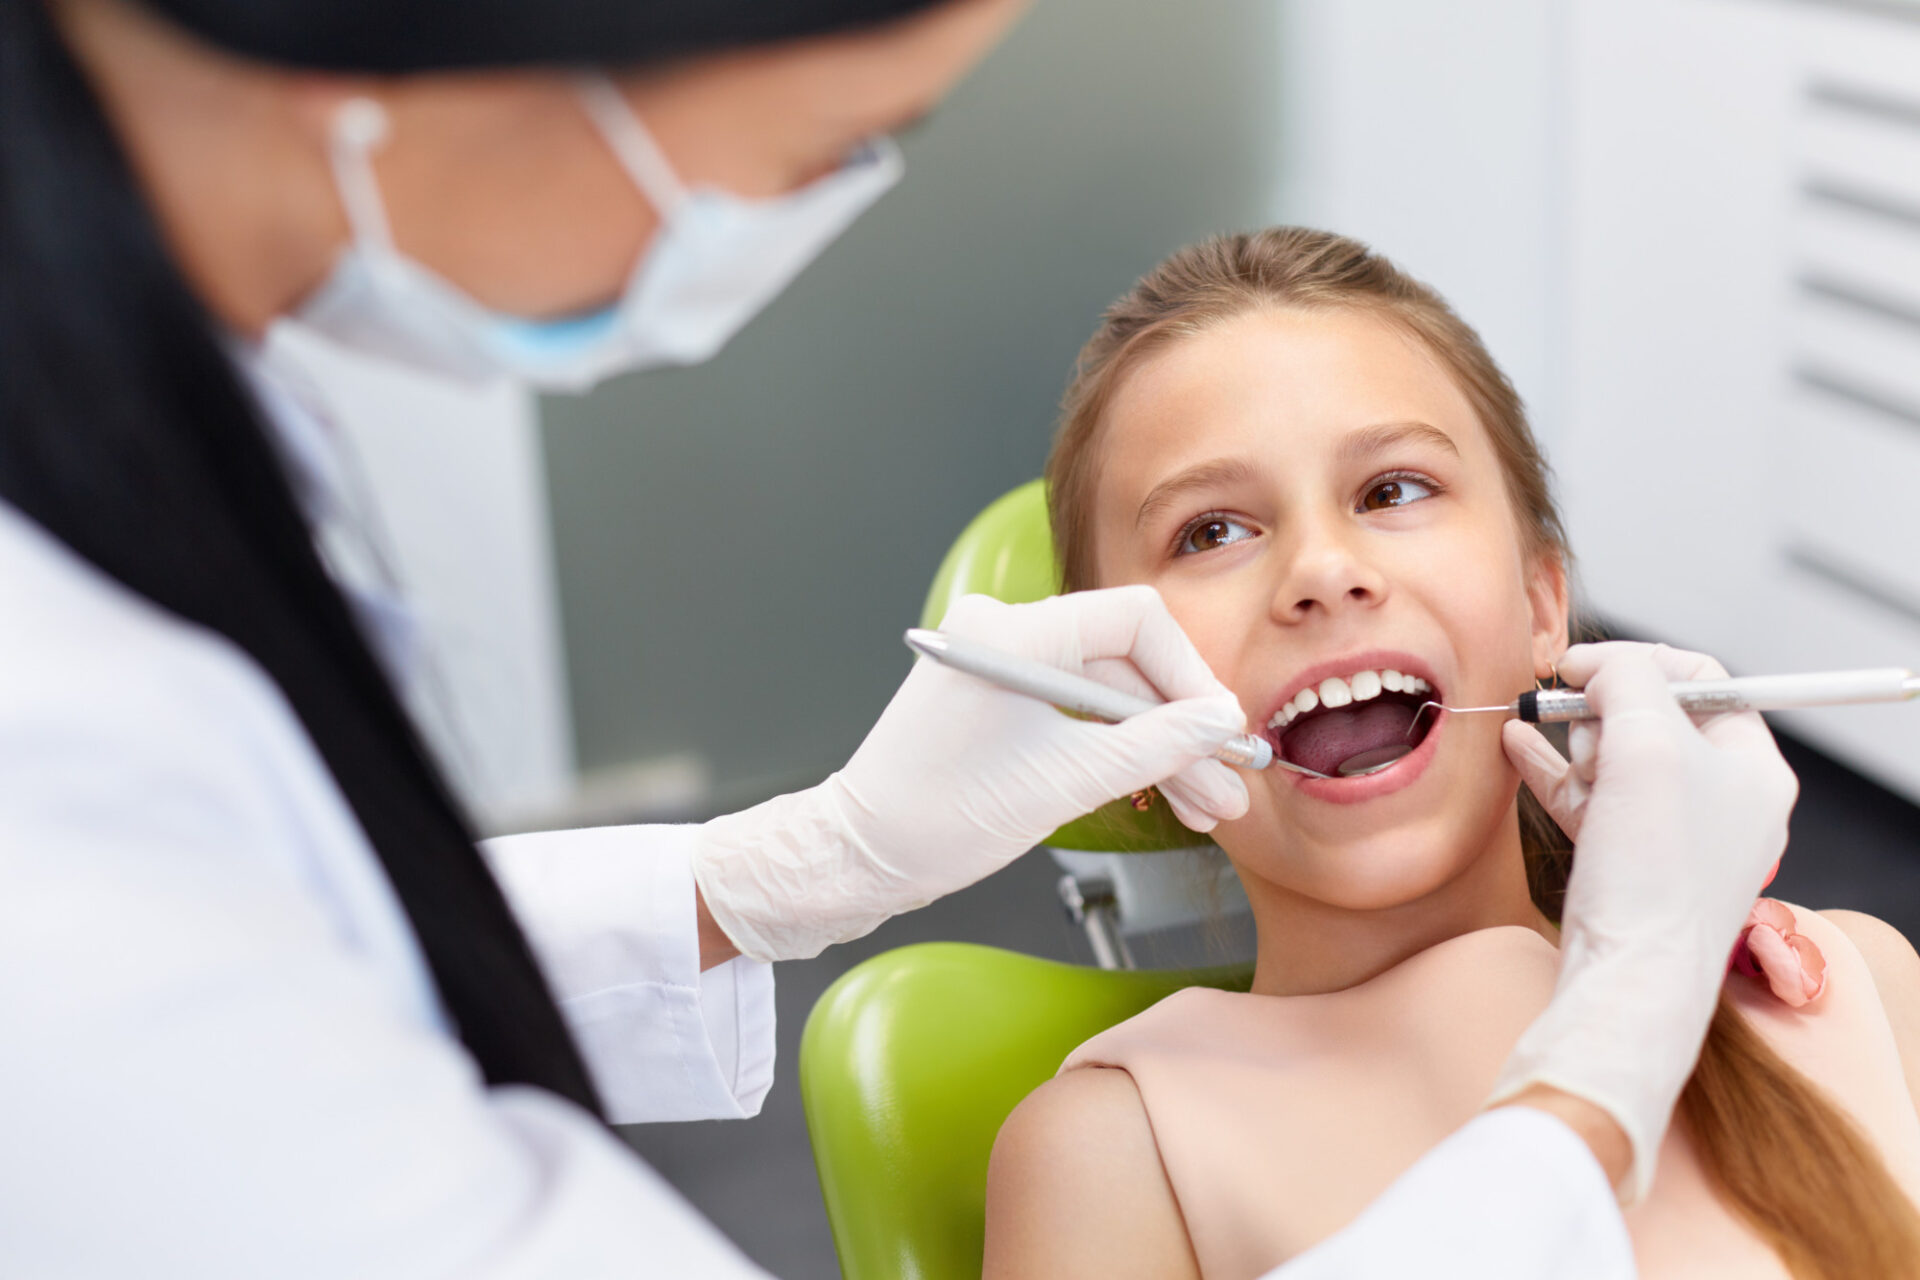 Dental Assistant Schools Cost